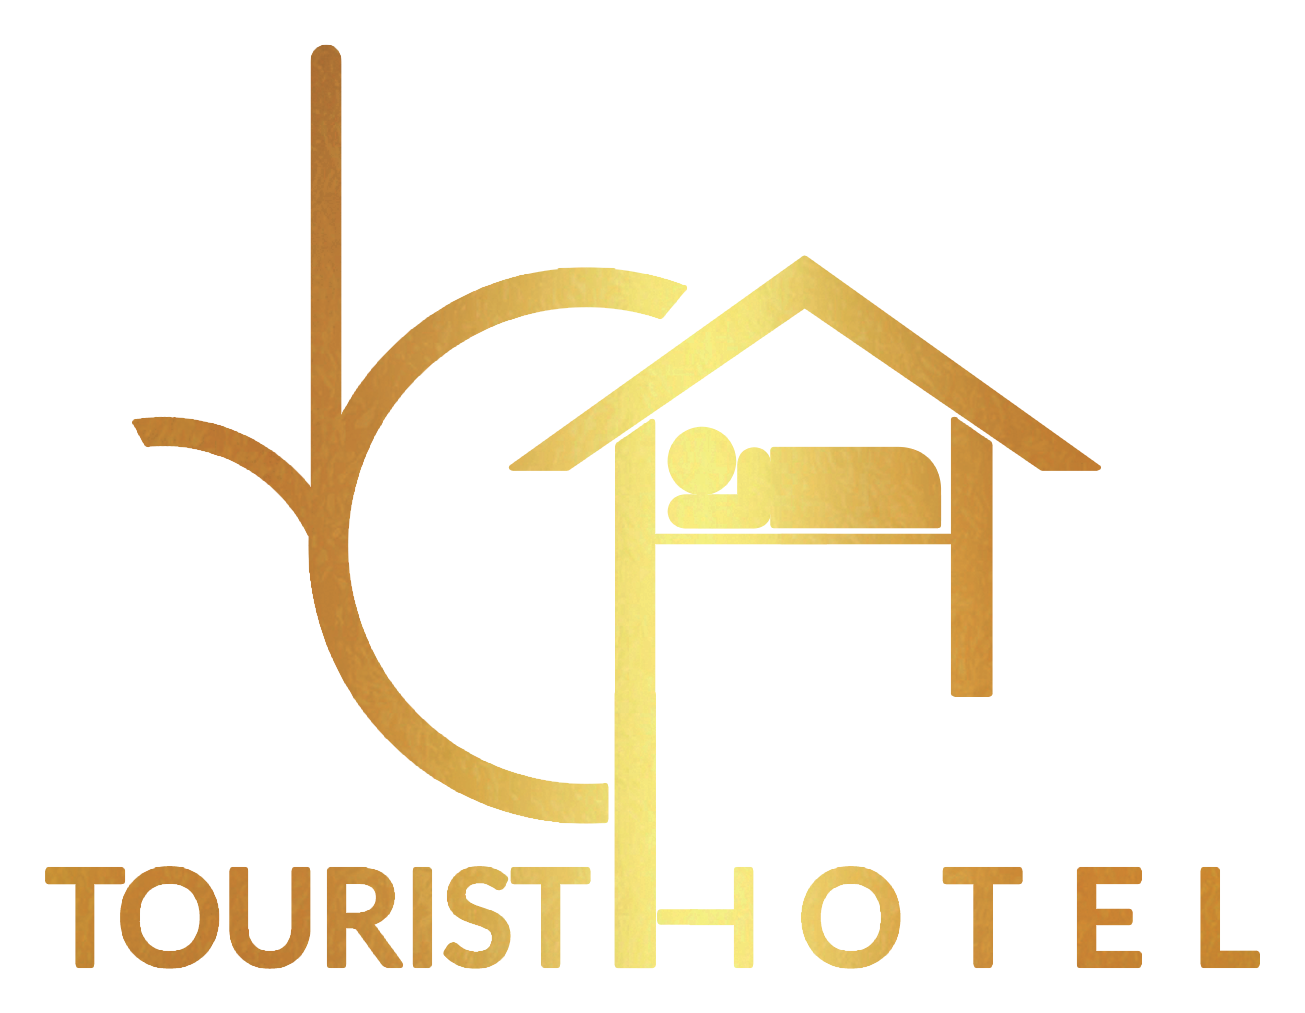 عروض فنادق وسط البلد - اماكن للاقامة بالقاهرة - فنادق وسط البلد بالقاهرة رخيصة